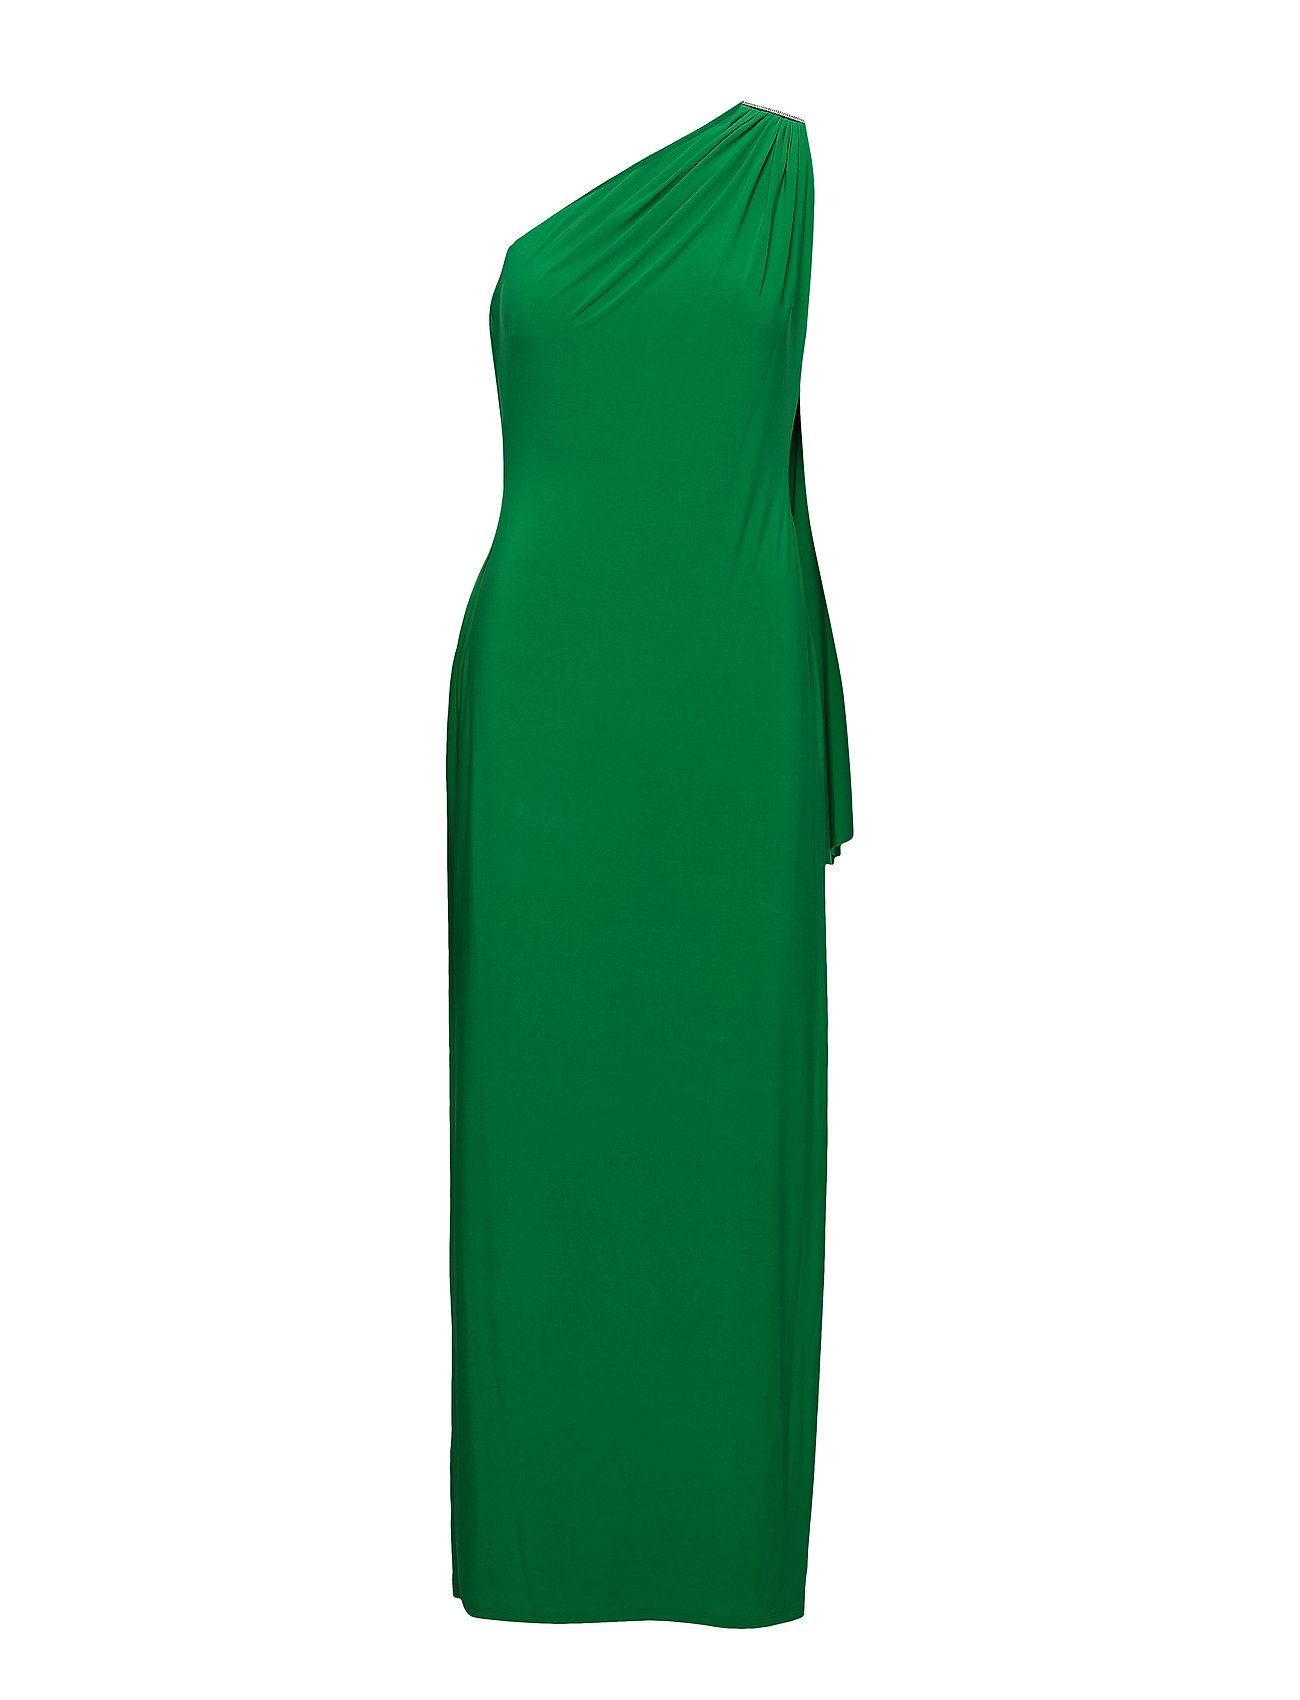 green ralph lauren dress